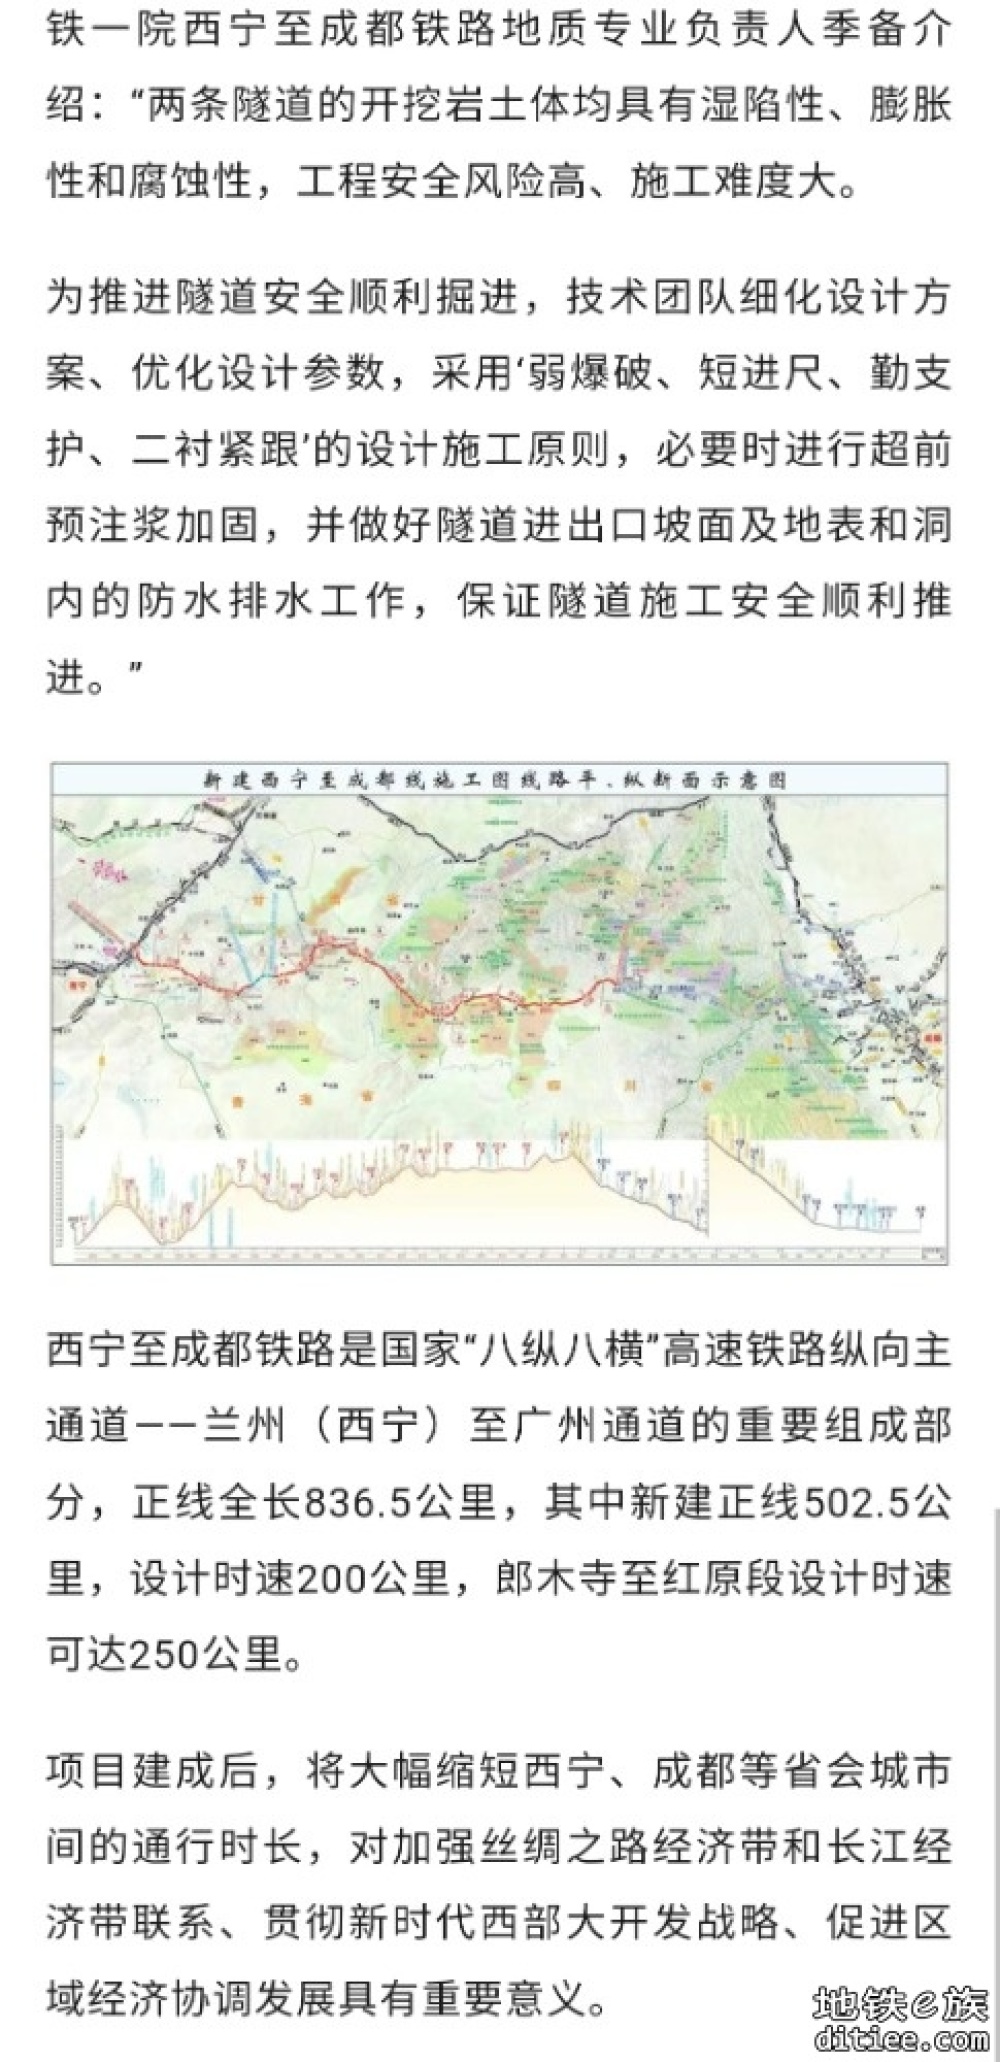 西宁至成都铁路全线首次实现隧道贯通